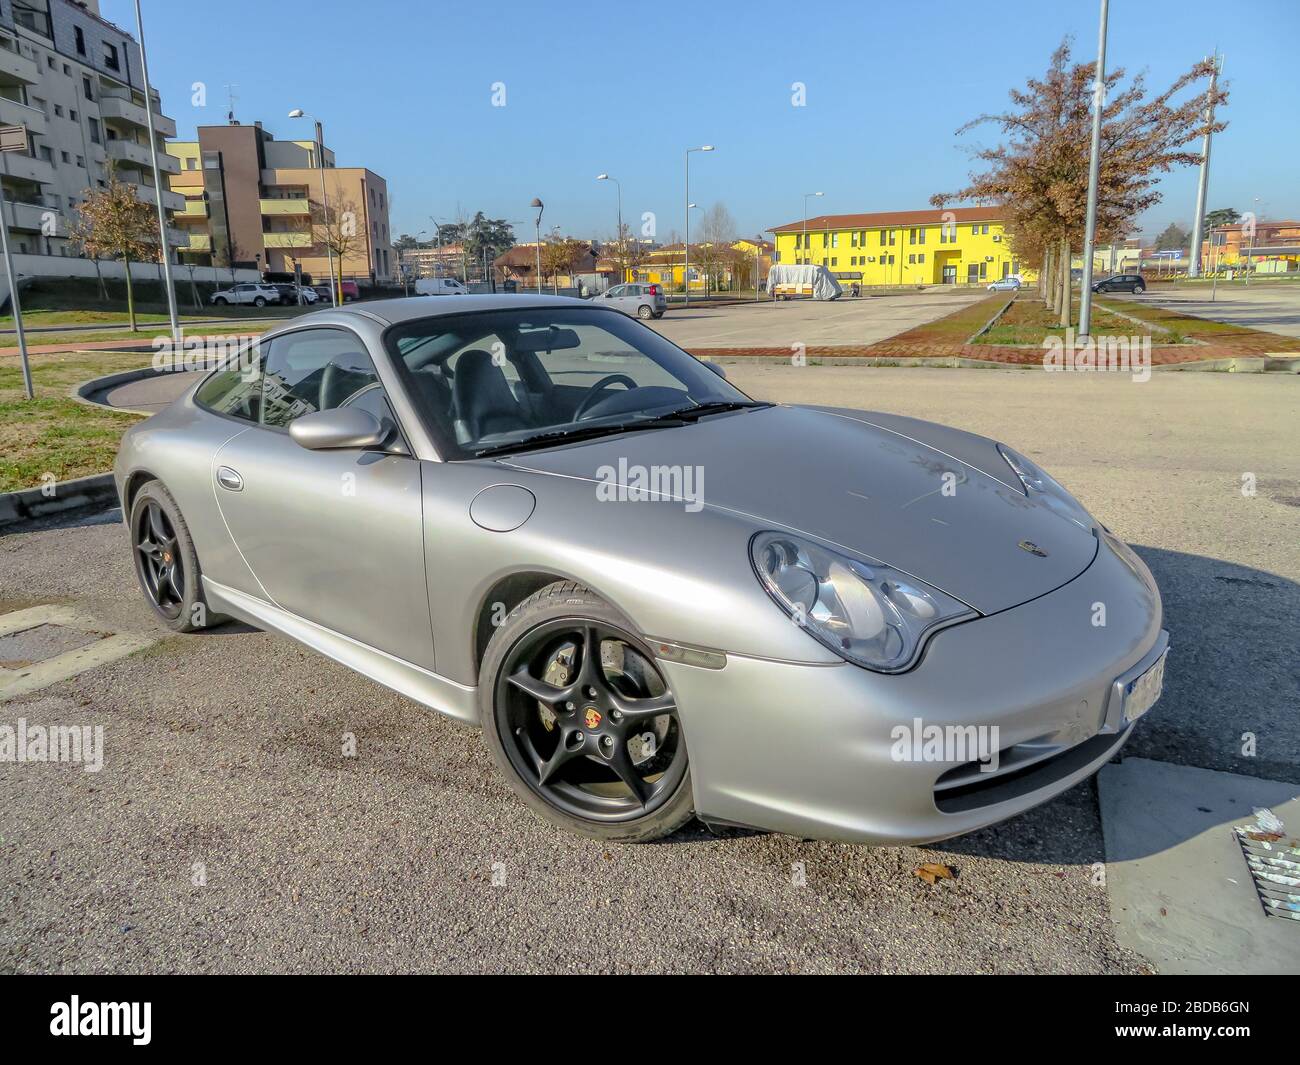 Bologna, Italia - 6 febbraio 2019: Vista a tre quarti di una vettura sportiva grigia turbo, Porsche Carrera 996 o Porsche 911 in un parco cittadino. Foto Stock